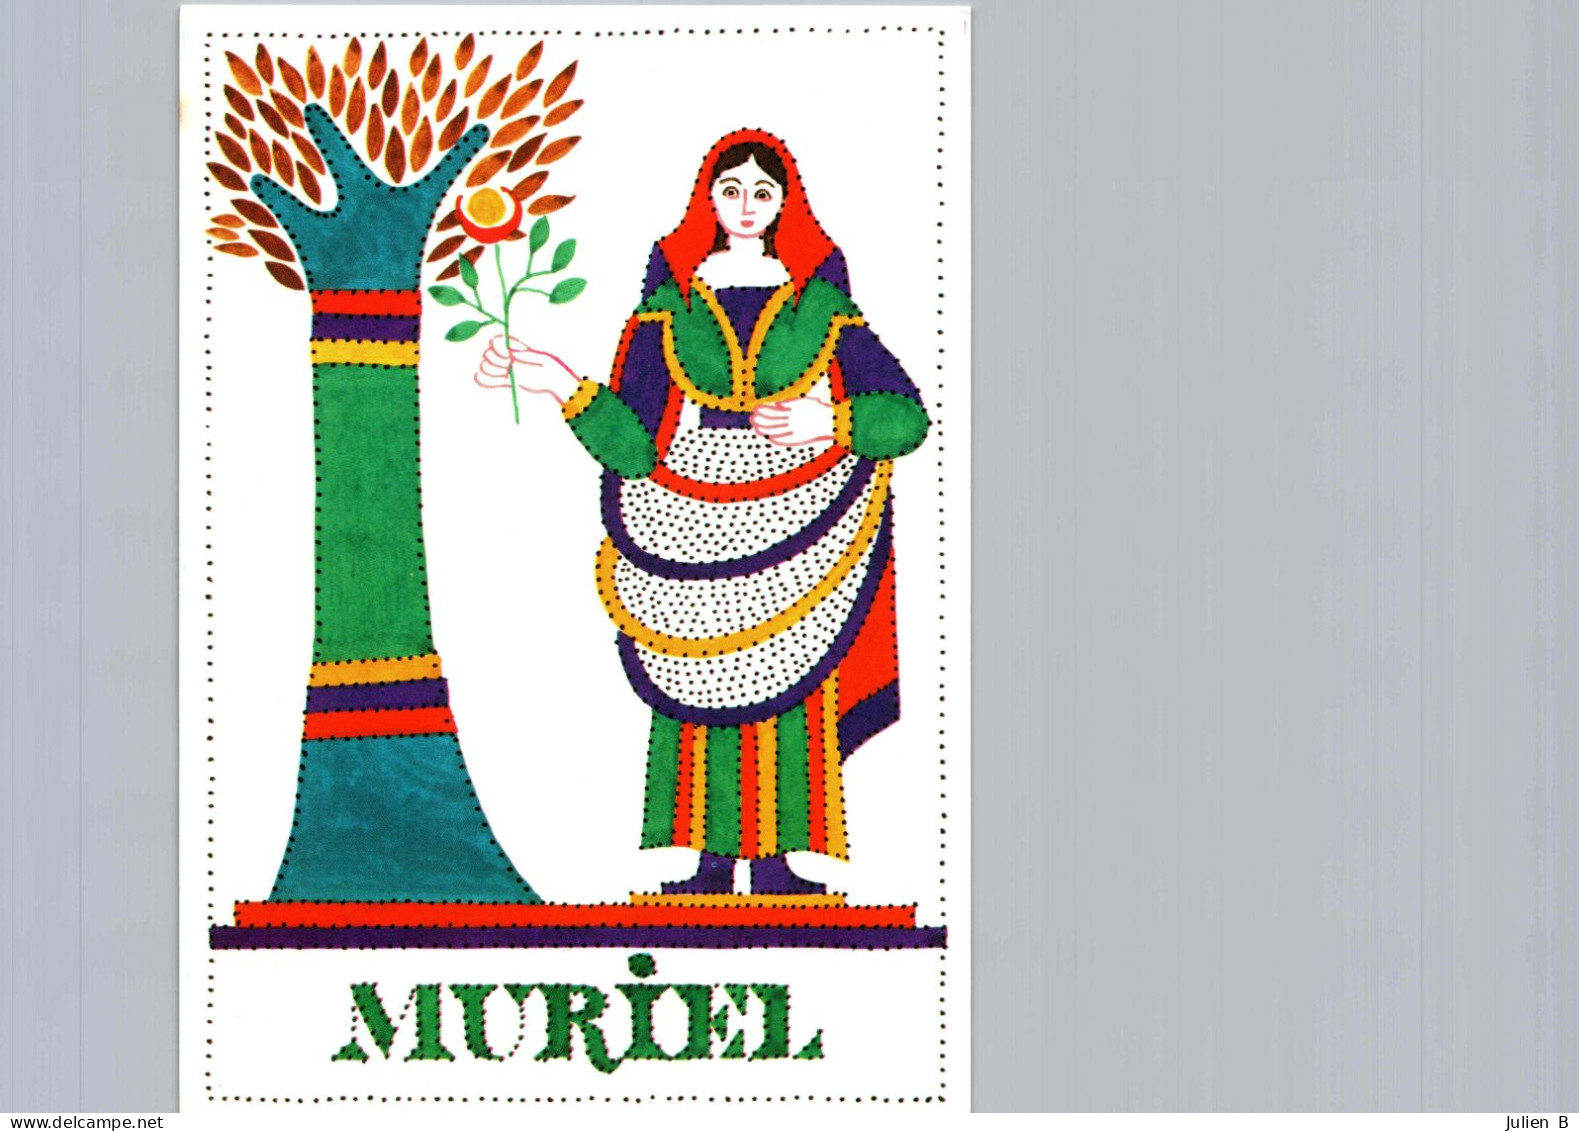 Muriel, Edition Betula - Nomi